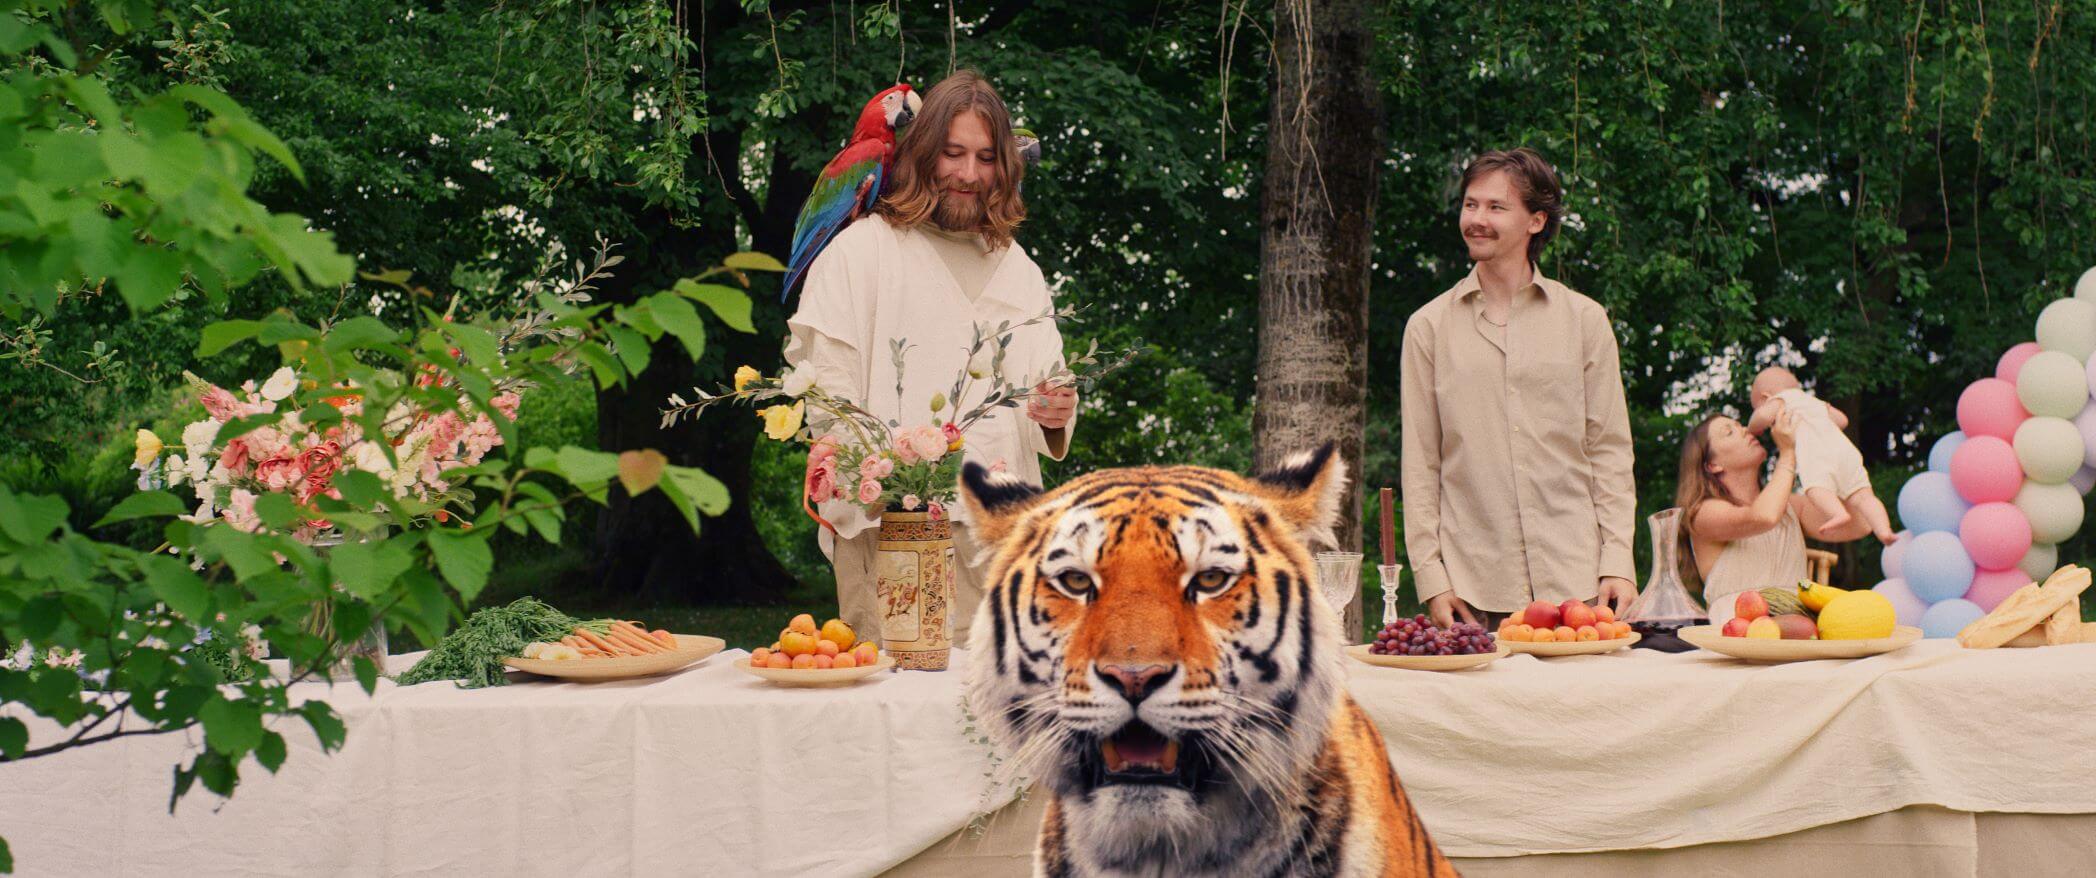 Tygr v ráji je portrétem indie folkového písničkáře José Gonzáleze